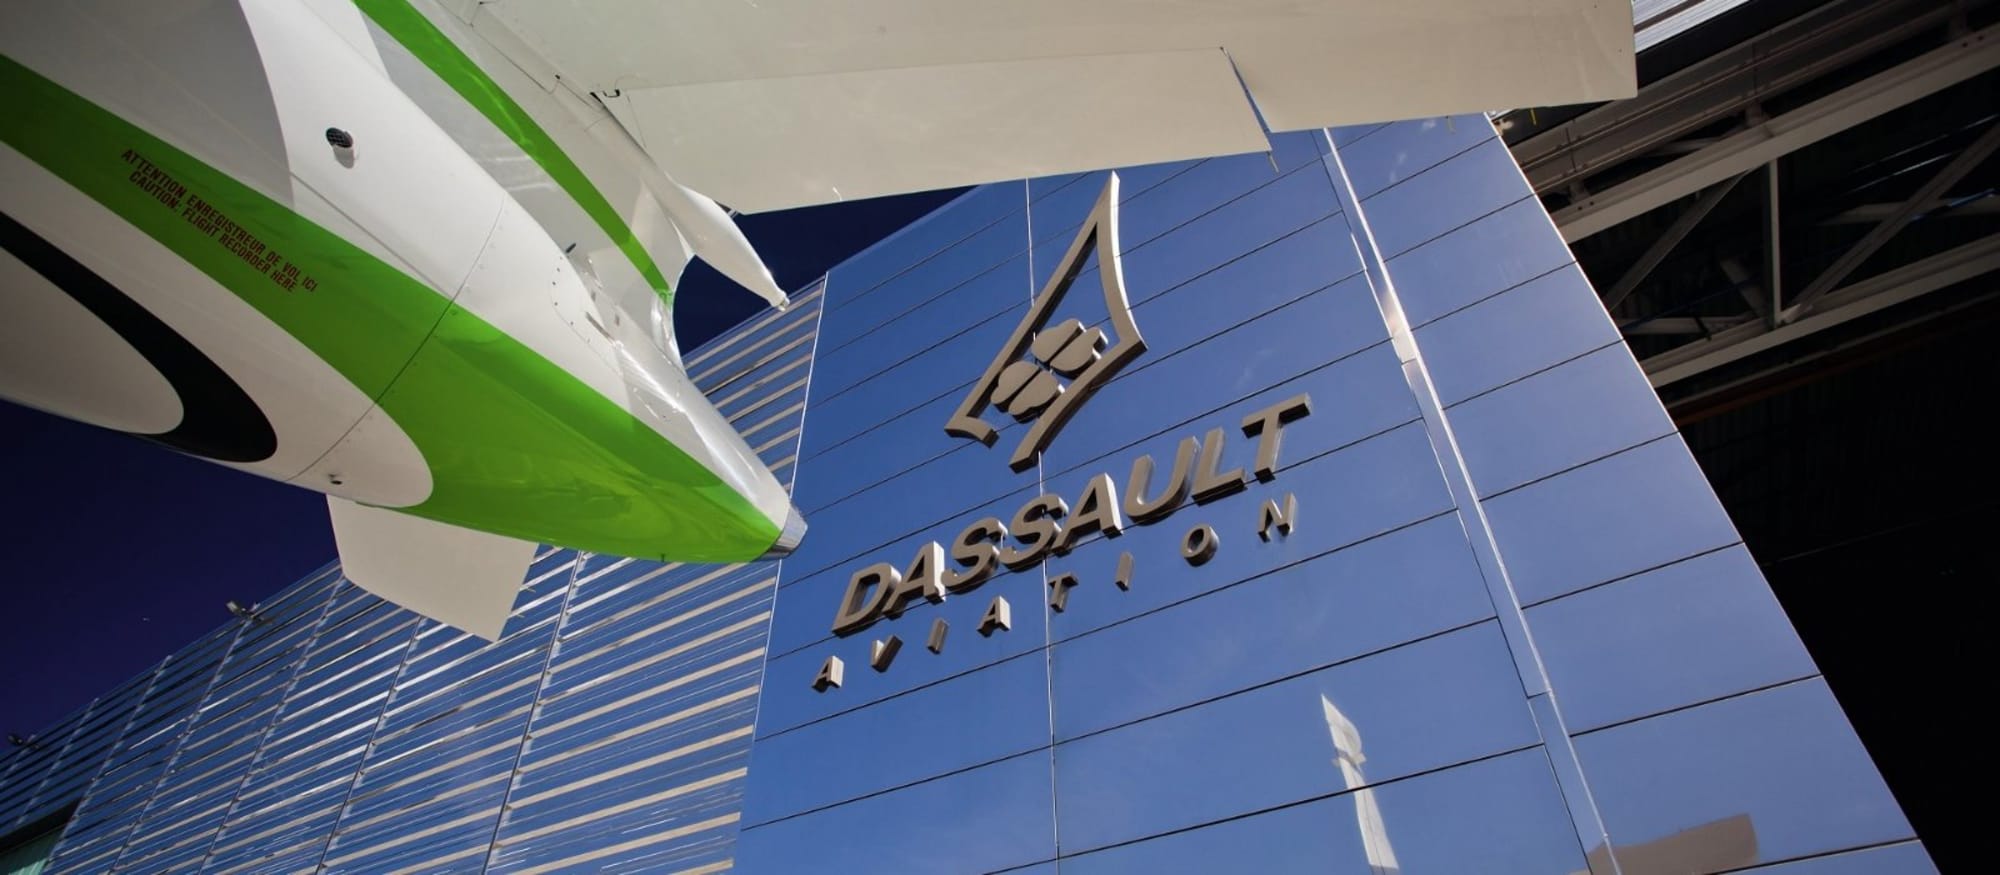 Établissement Dassault Aviation : Bordeaux-Mérignac.